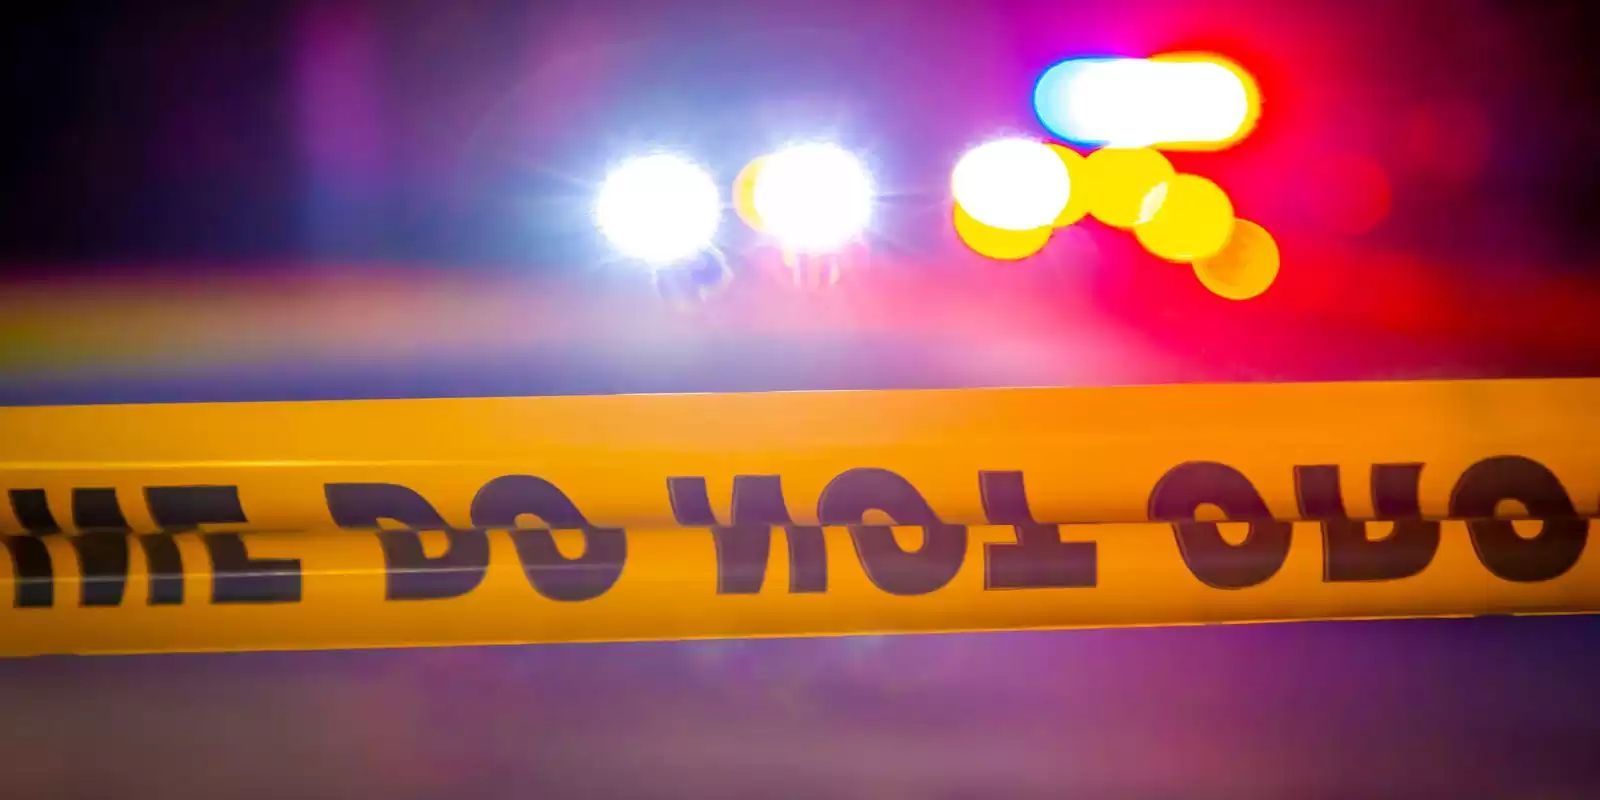 4 heridos en un tiroteo en Walmart Beavercreek Ohio, la policía dice que el presunto tirador murió